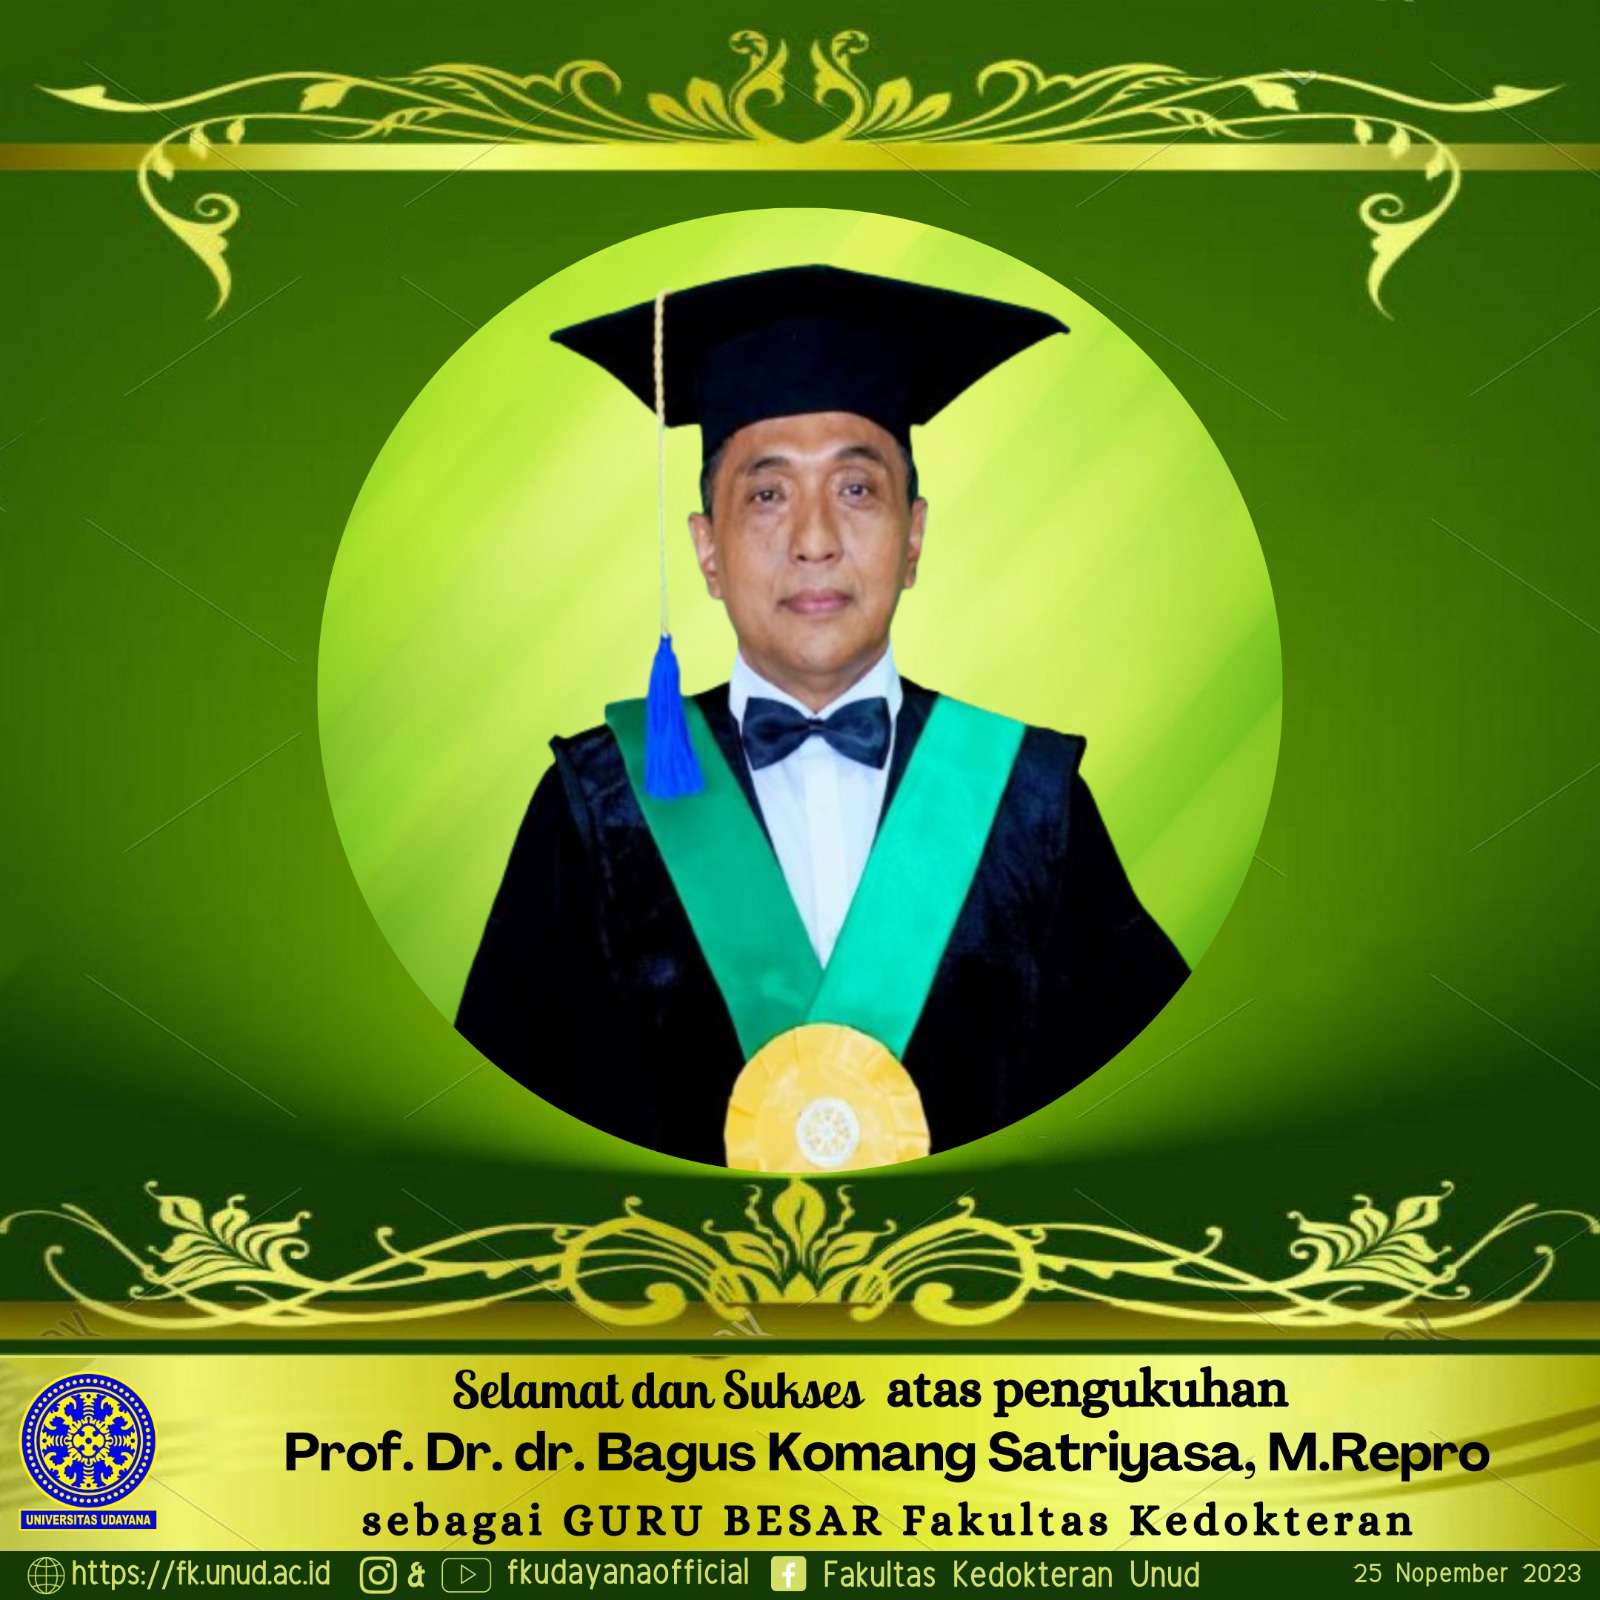 Congratulations and Success on the Inauguration of Prof. Dr. Dr. Bagus Komang Satriyasa, M. Repro